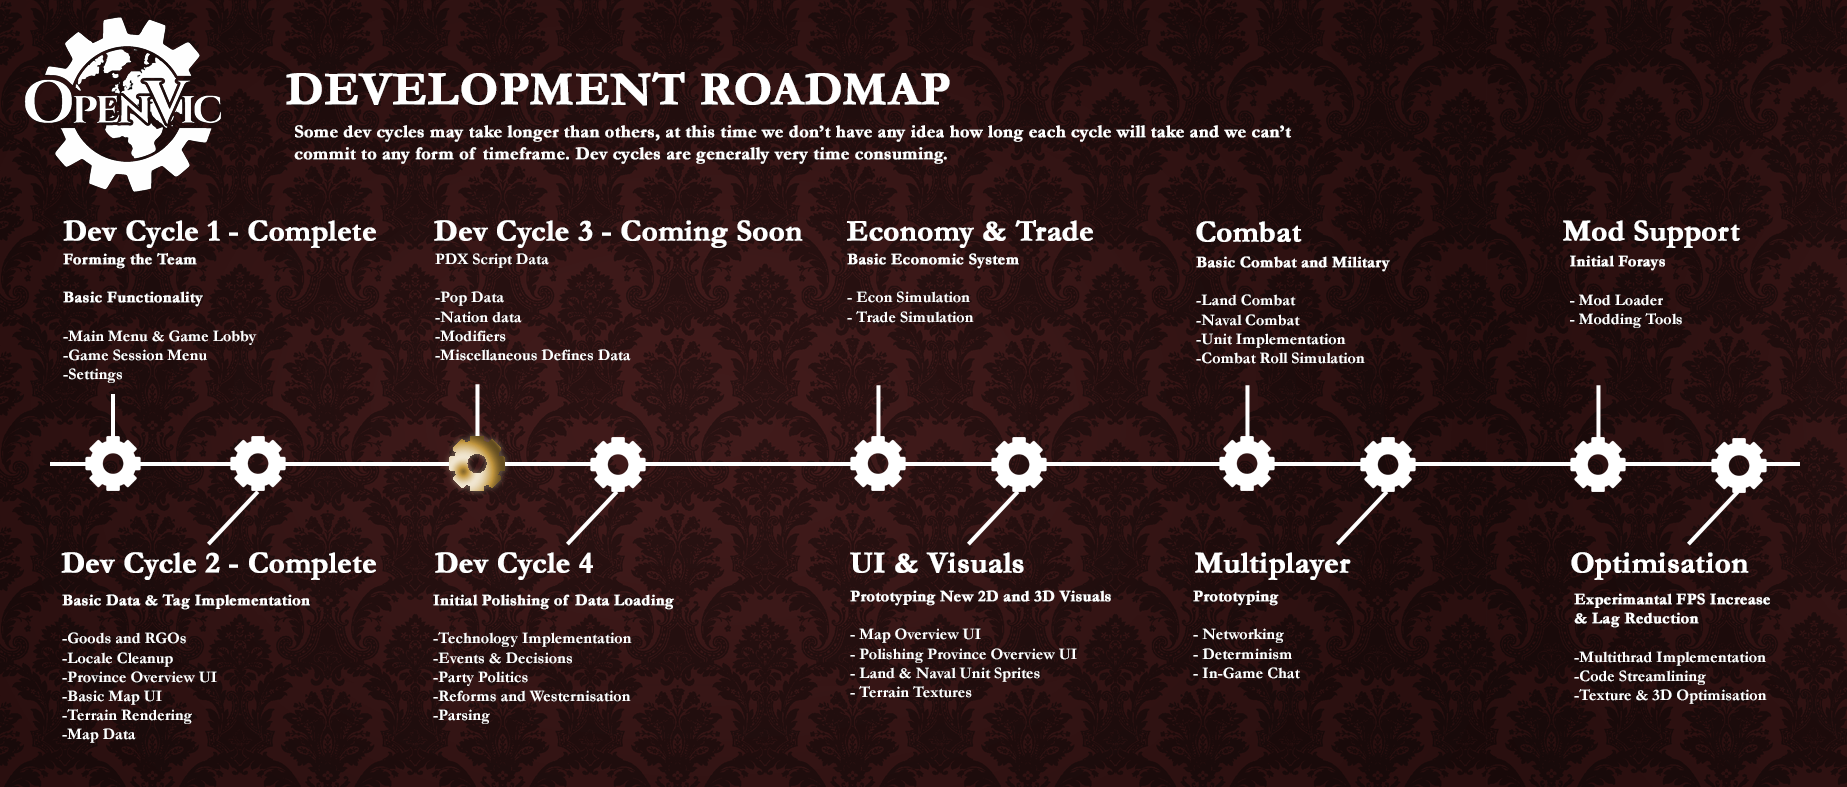 Project Roadmap